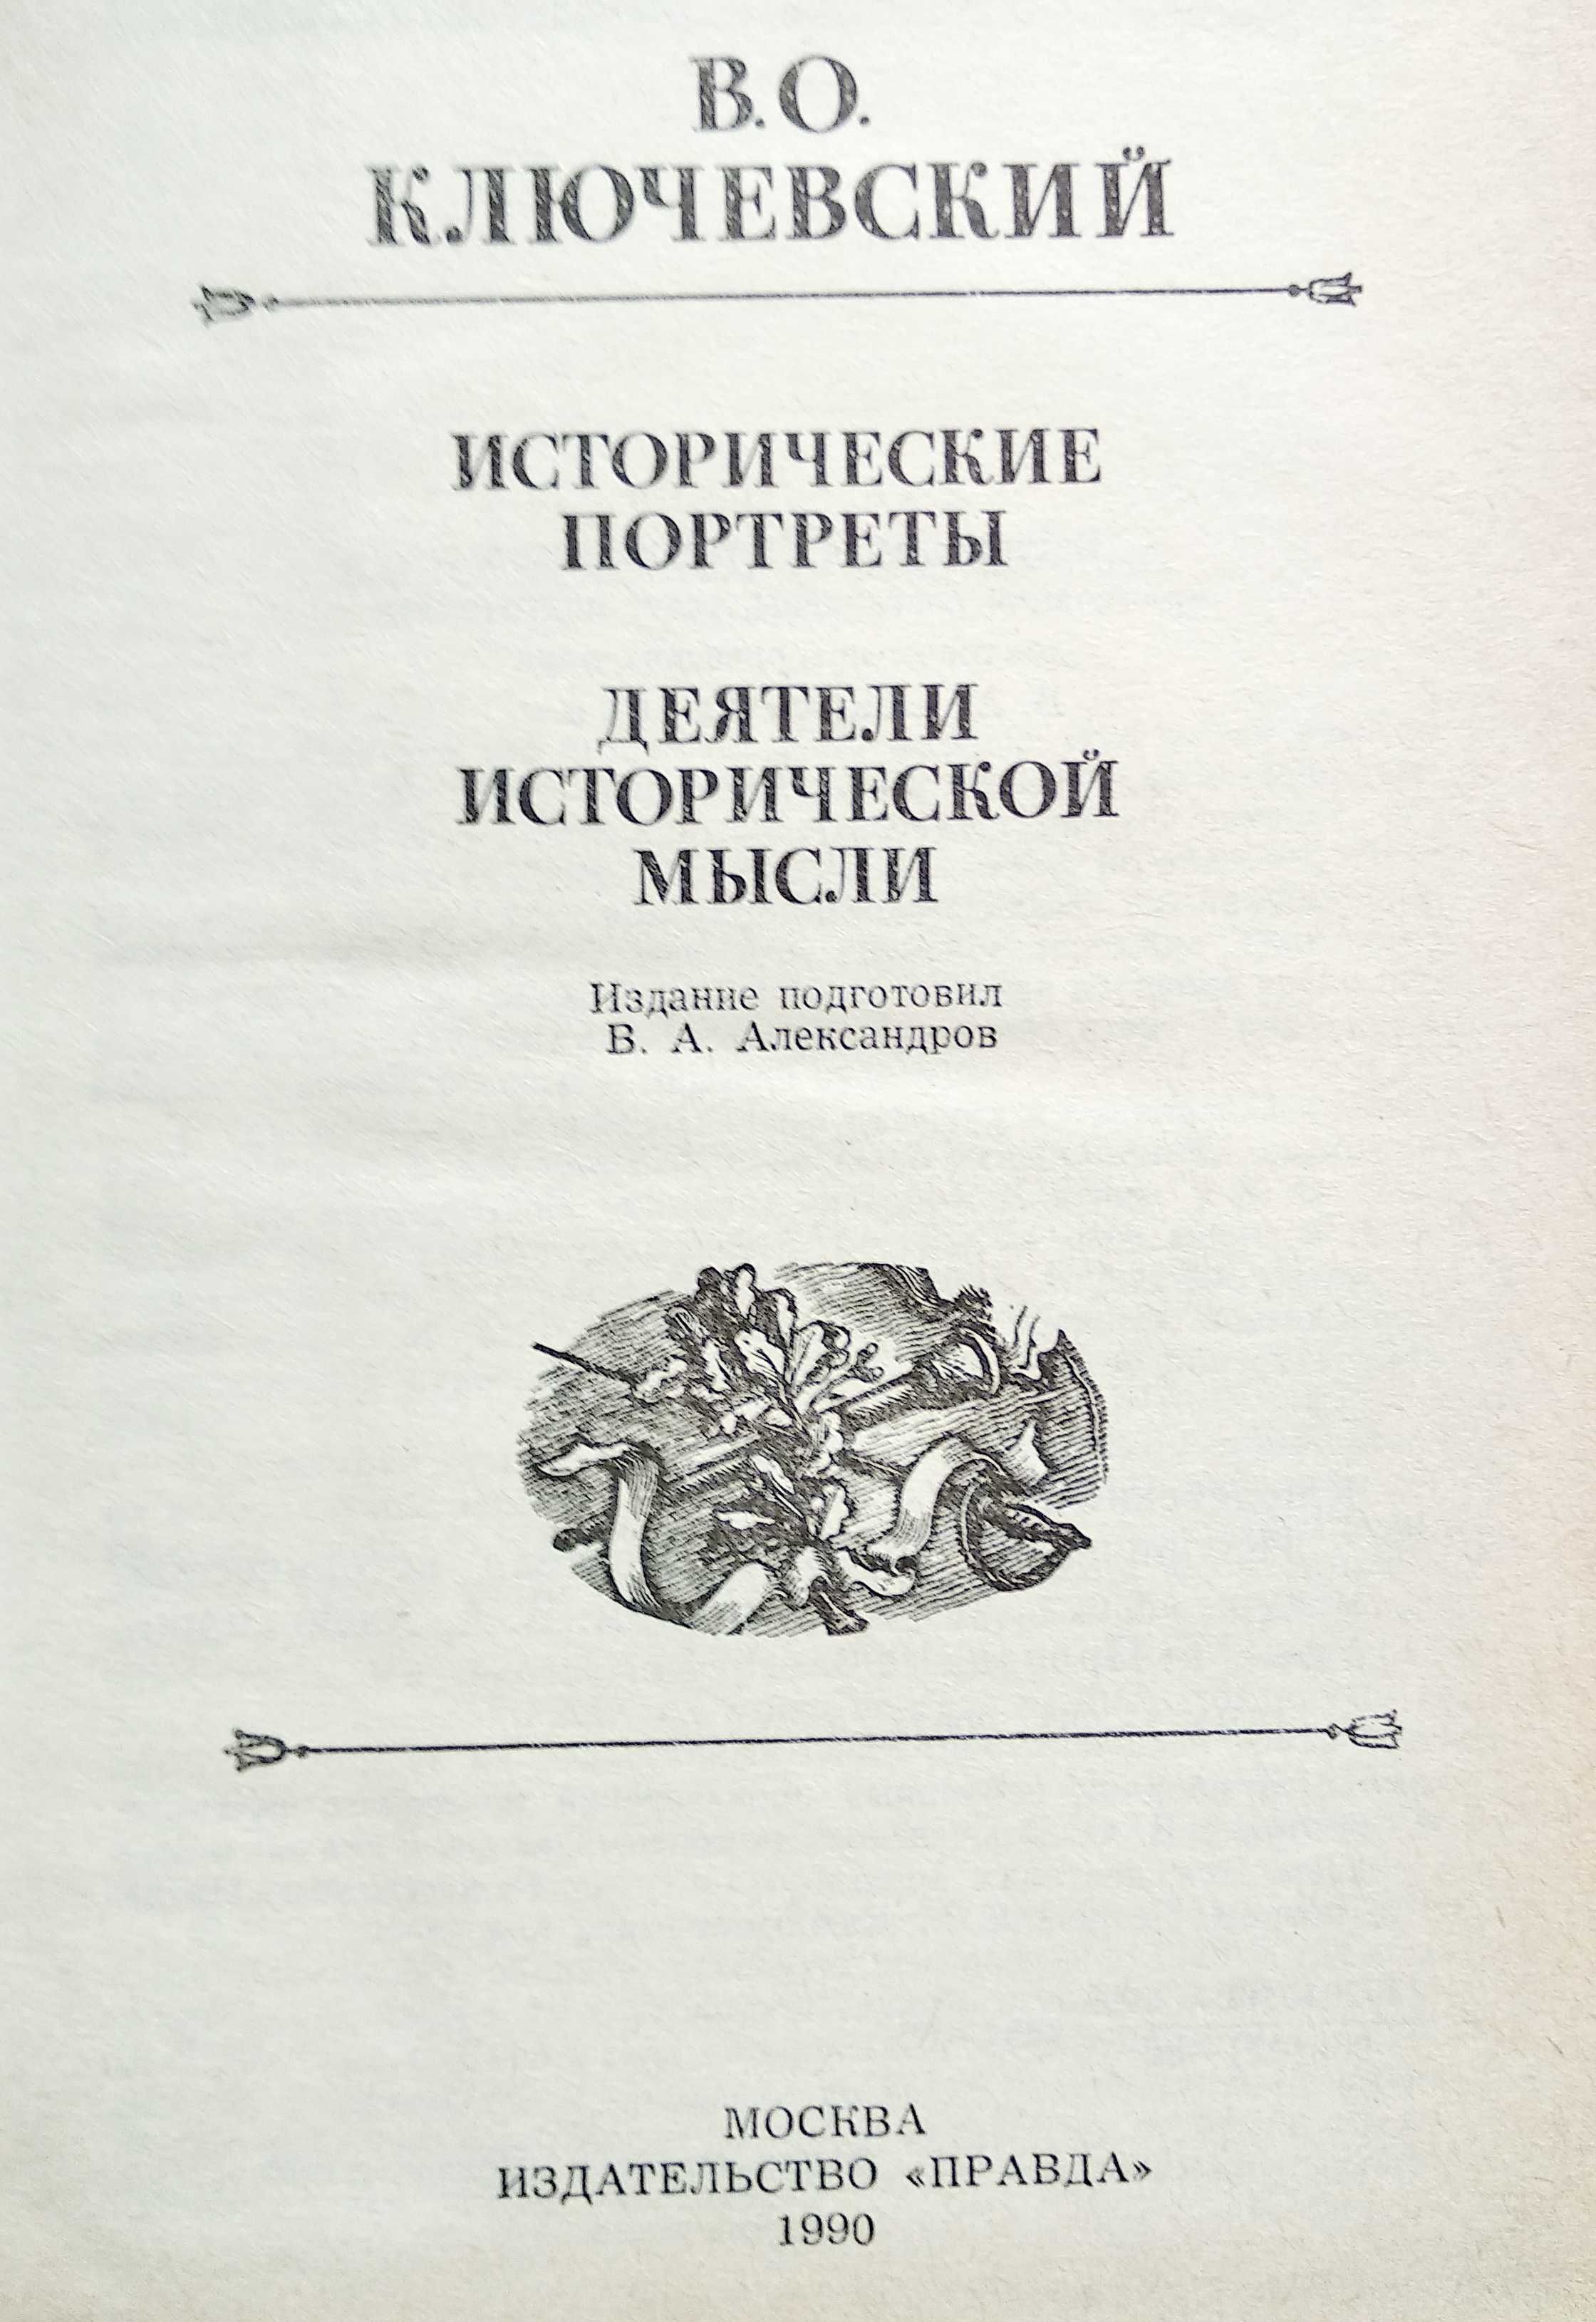 книга "Исторические портреты" Ключевский В.О., М., 1990 г.